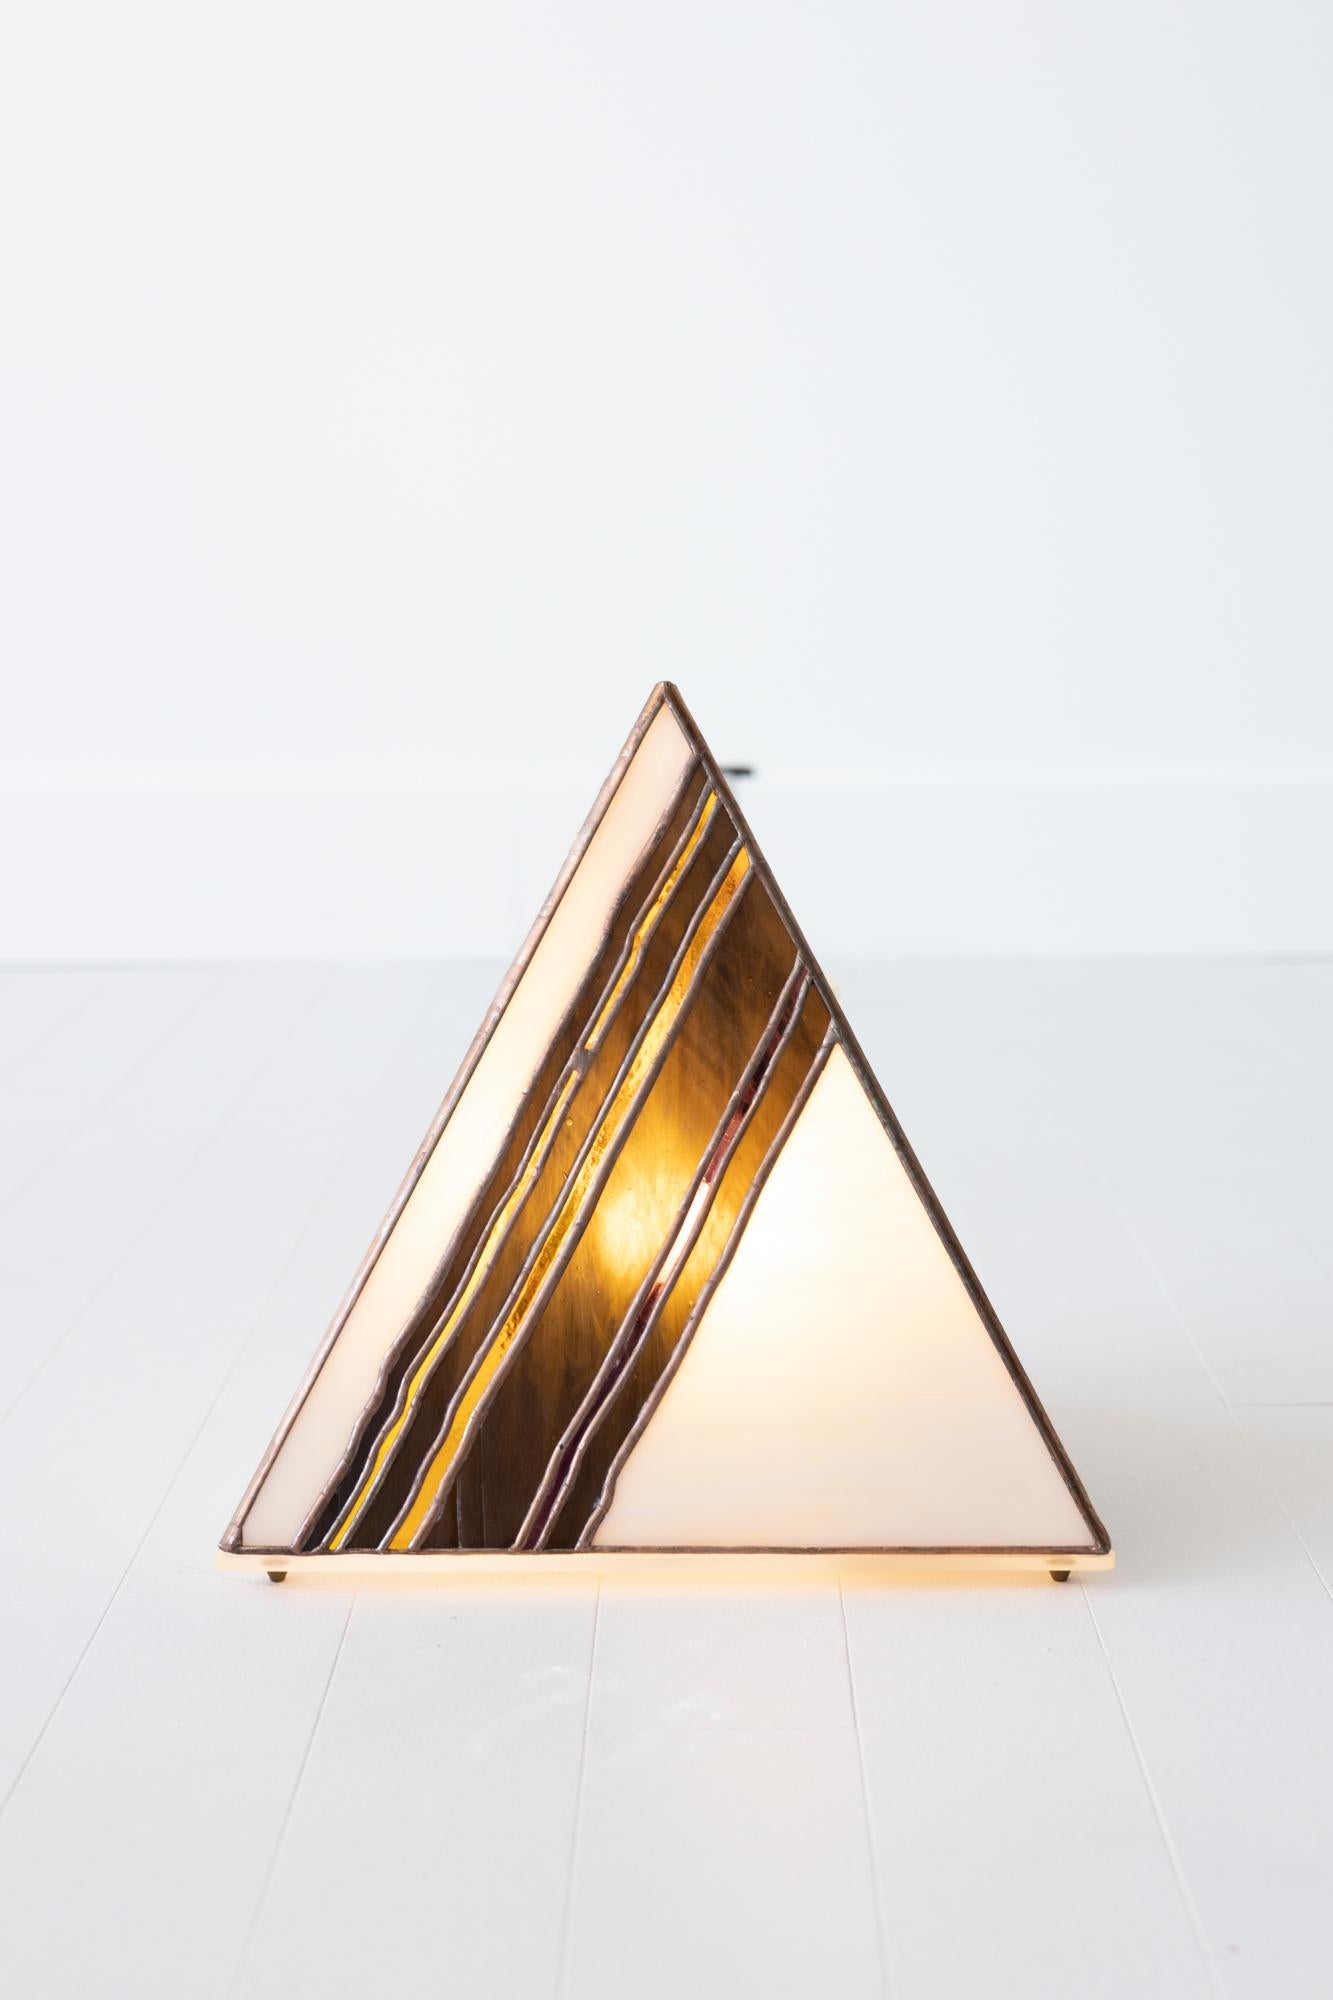 Lampe pyramide au coup de pinceau, verre teinté à la main, motif abstrait